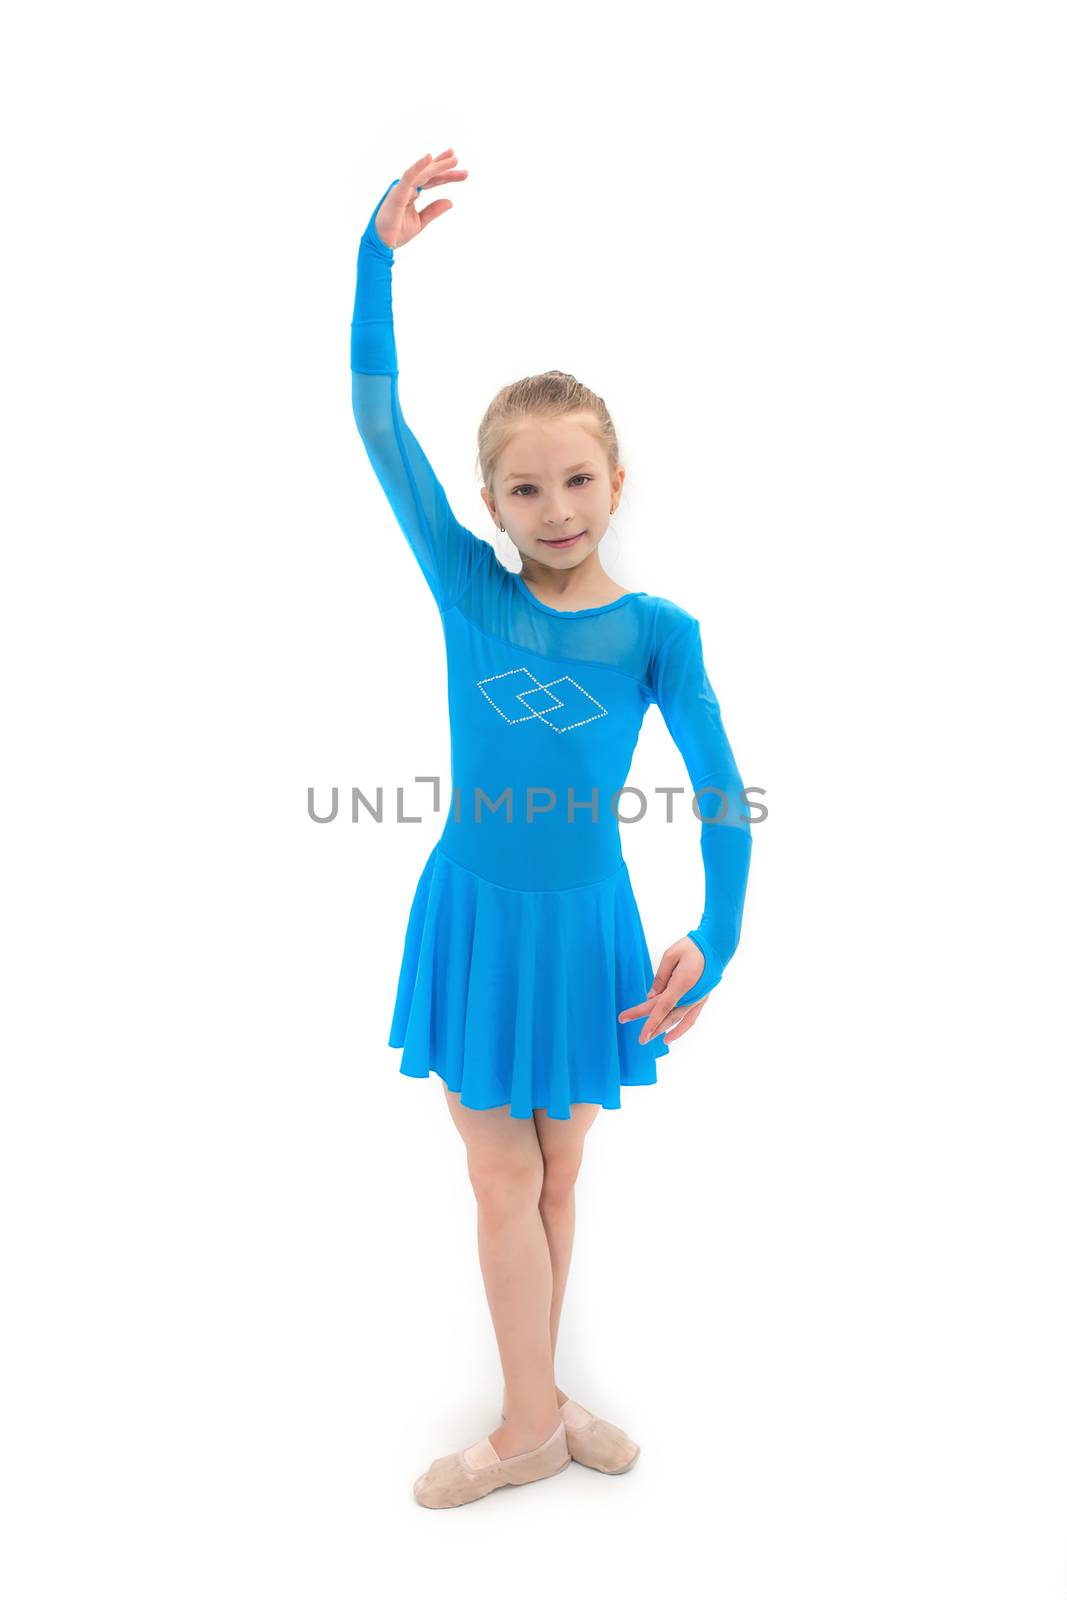 Cute little girl as dancer, studio shot on white background